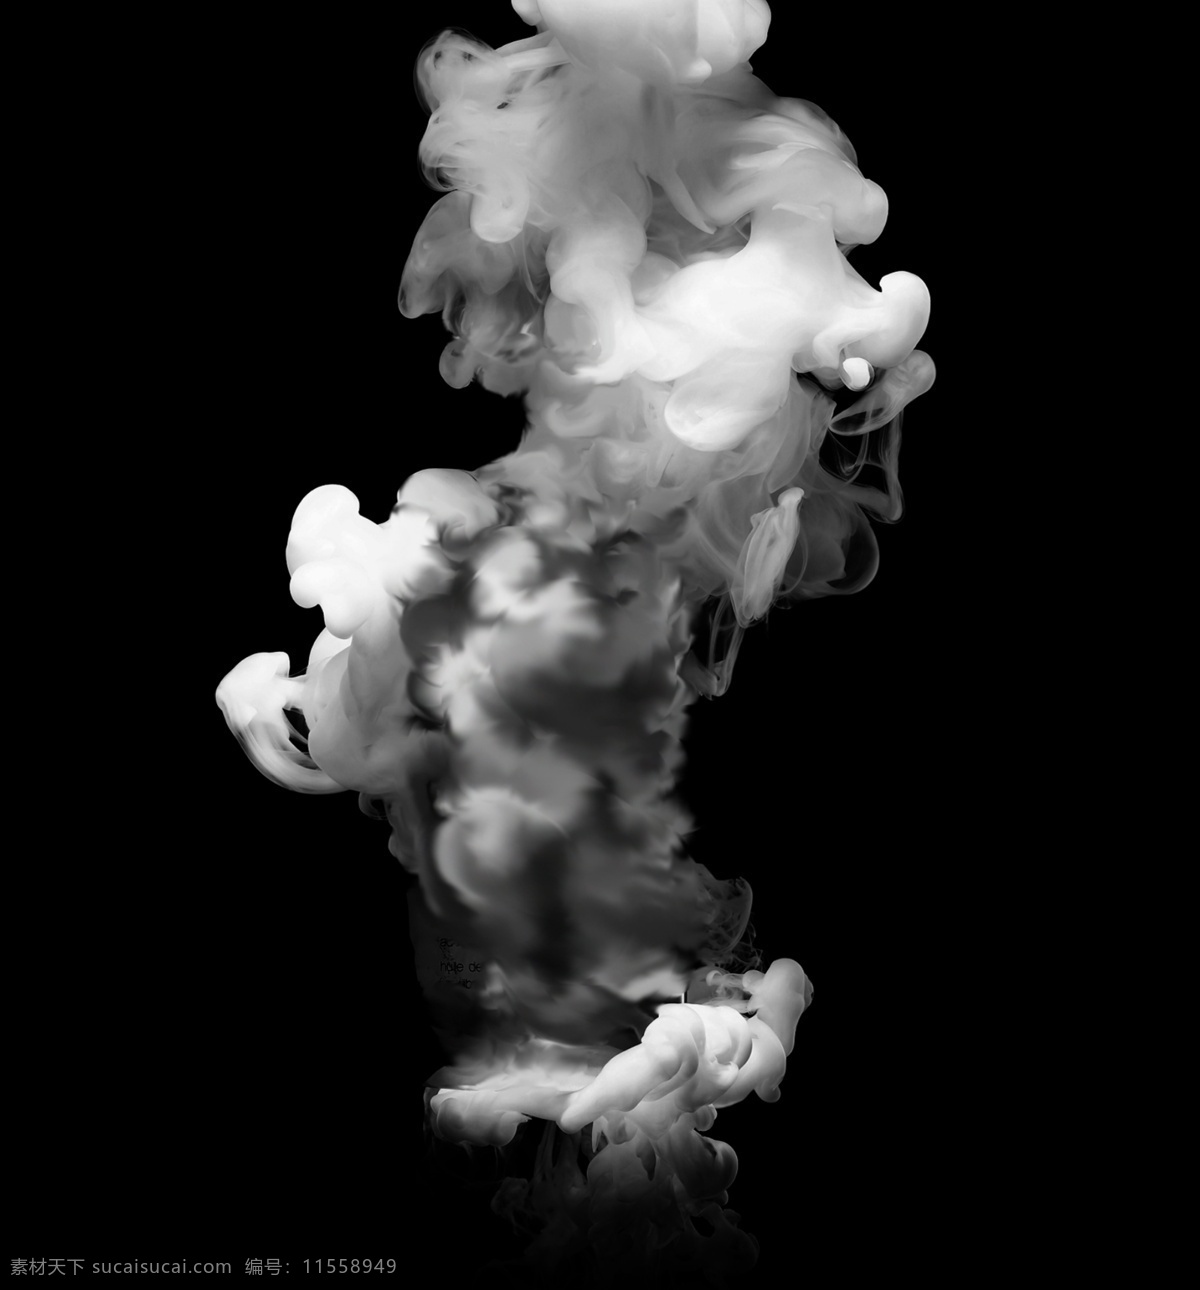 烟 透明烟 透明烟雾 蒸汽 热气 白烟 云 云雾 烟雾素材 烟雾背景 飘渺 气体 一缕烟 一团烟 分层